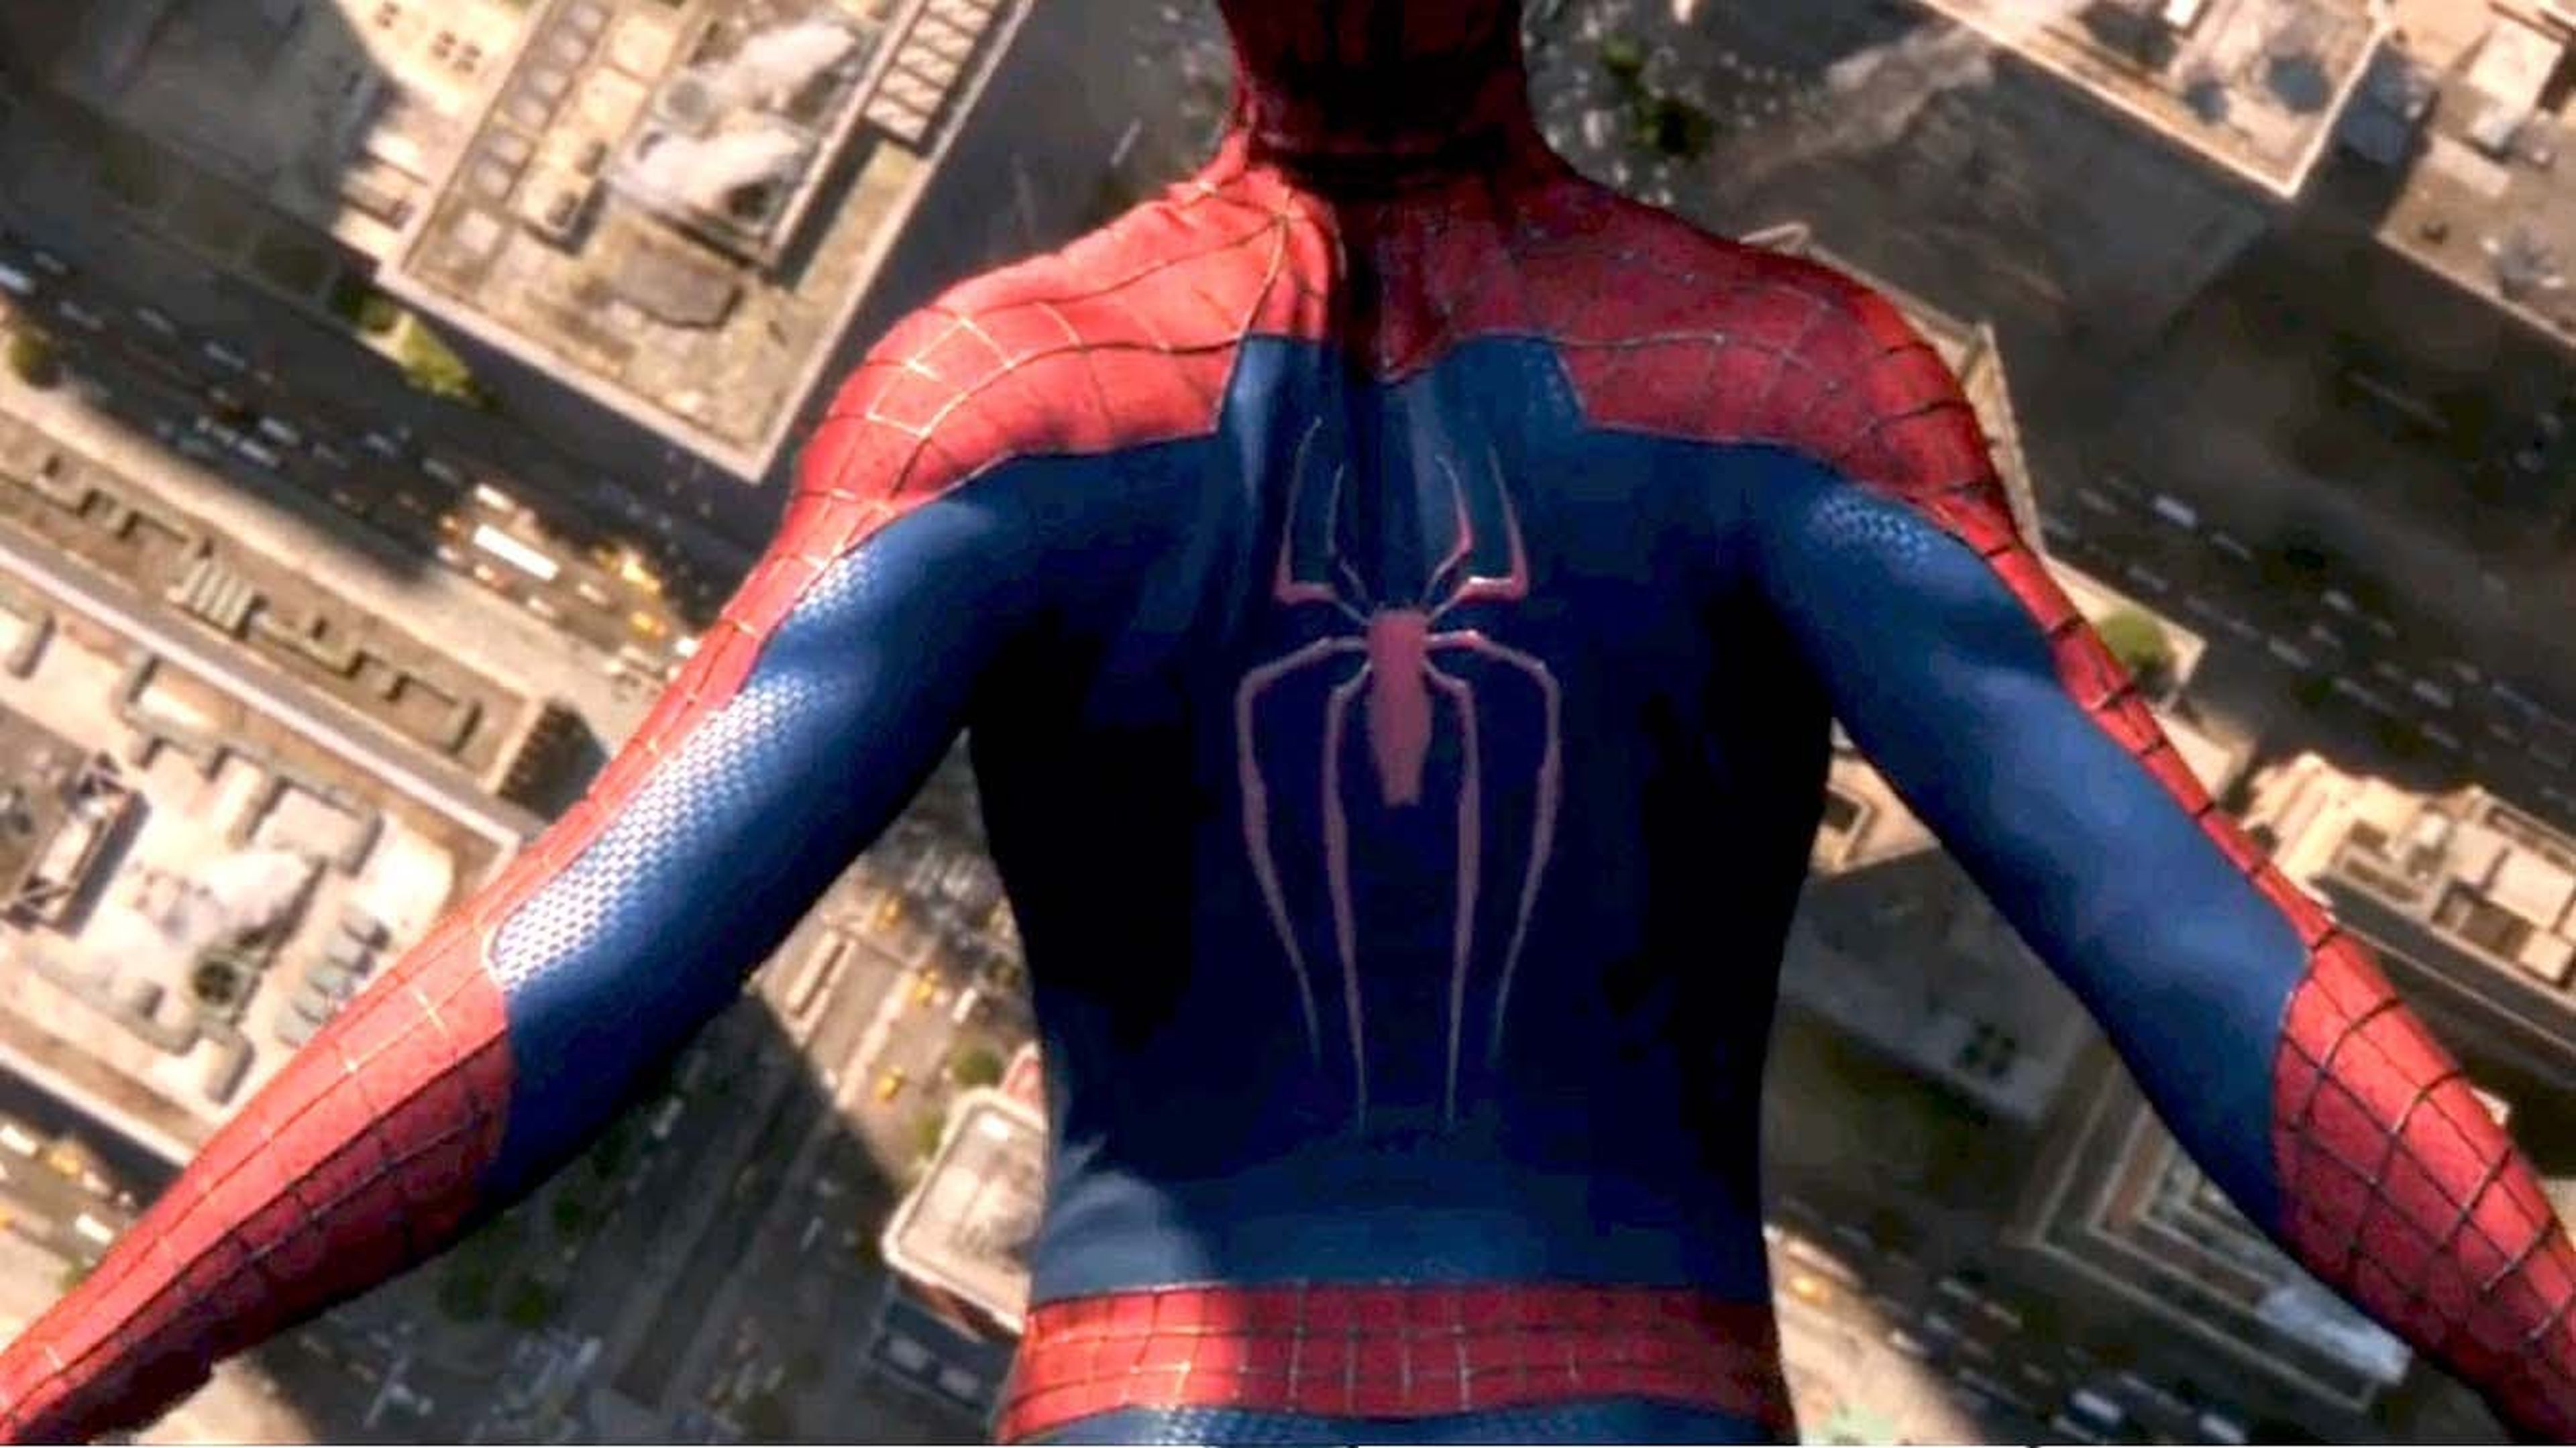 The Amazing Spider-Man: el poder de Electro ¡Crítica Doble!